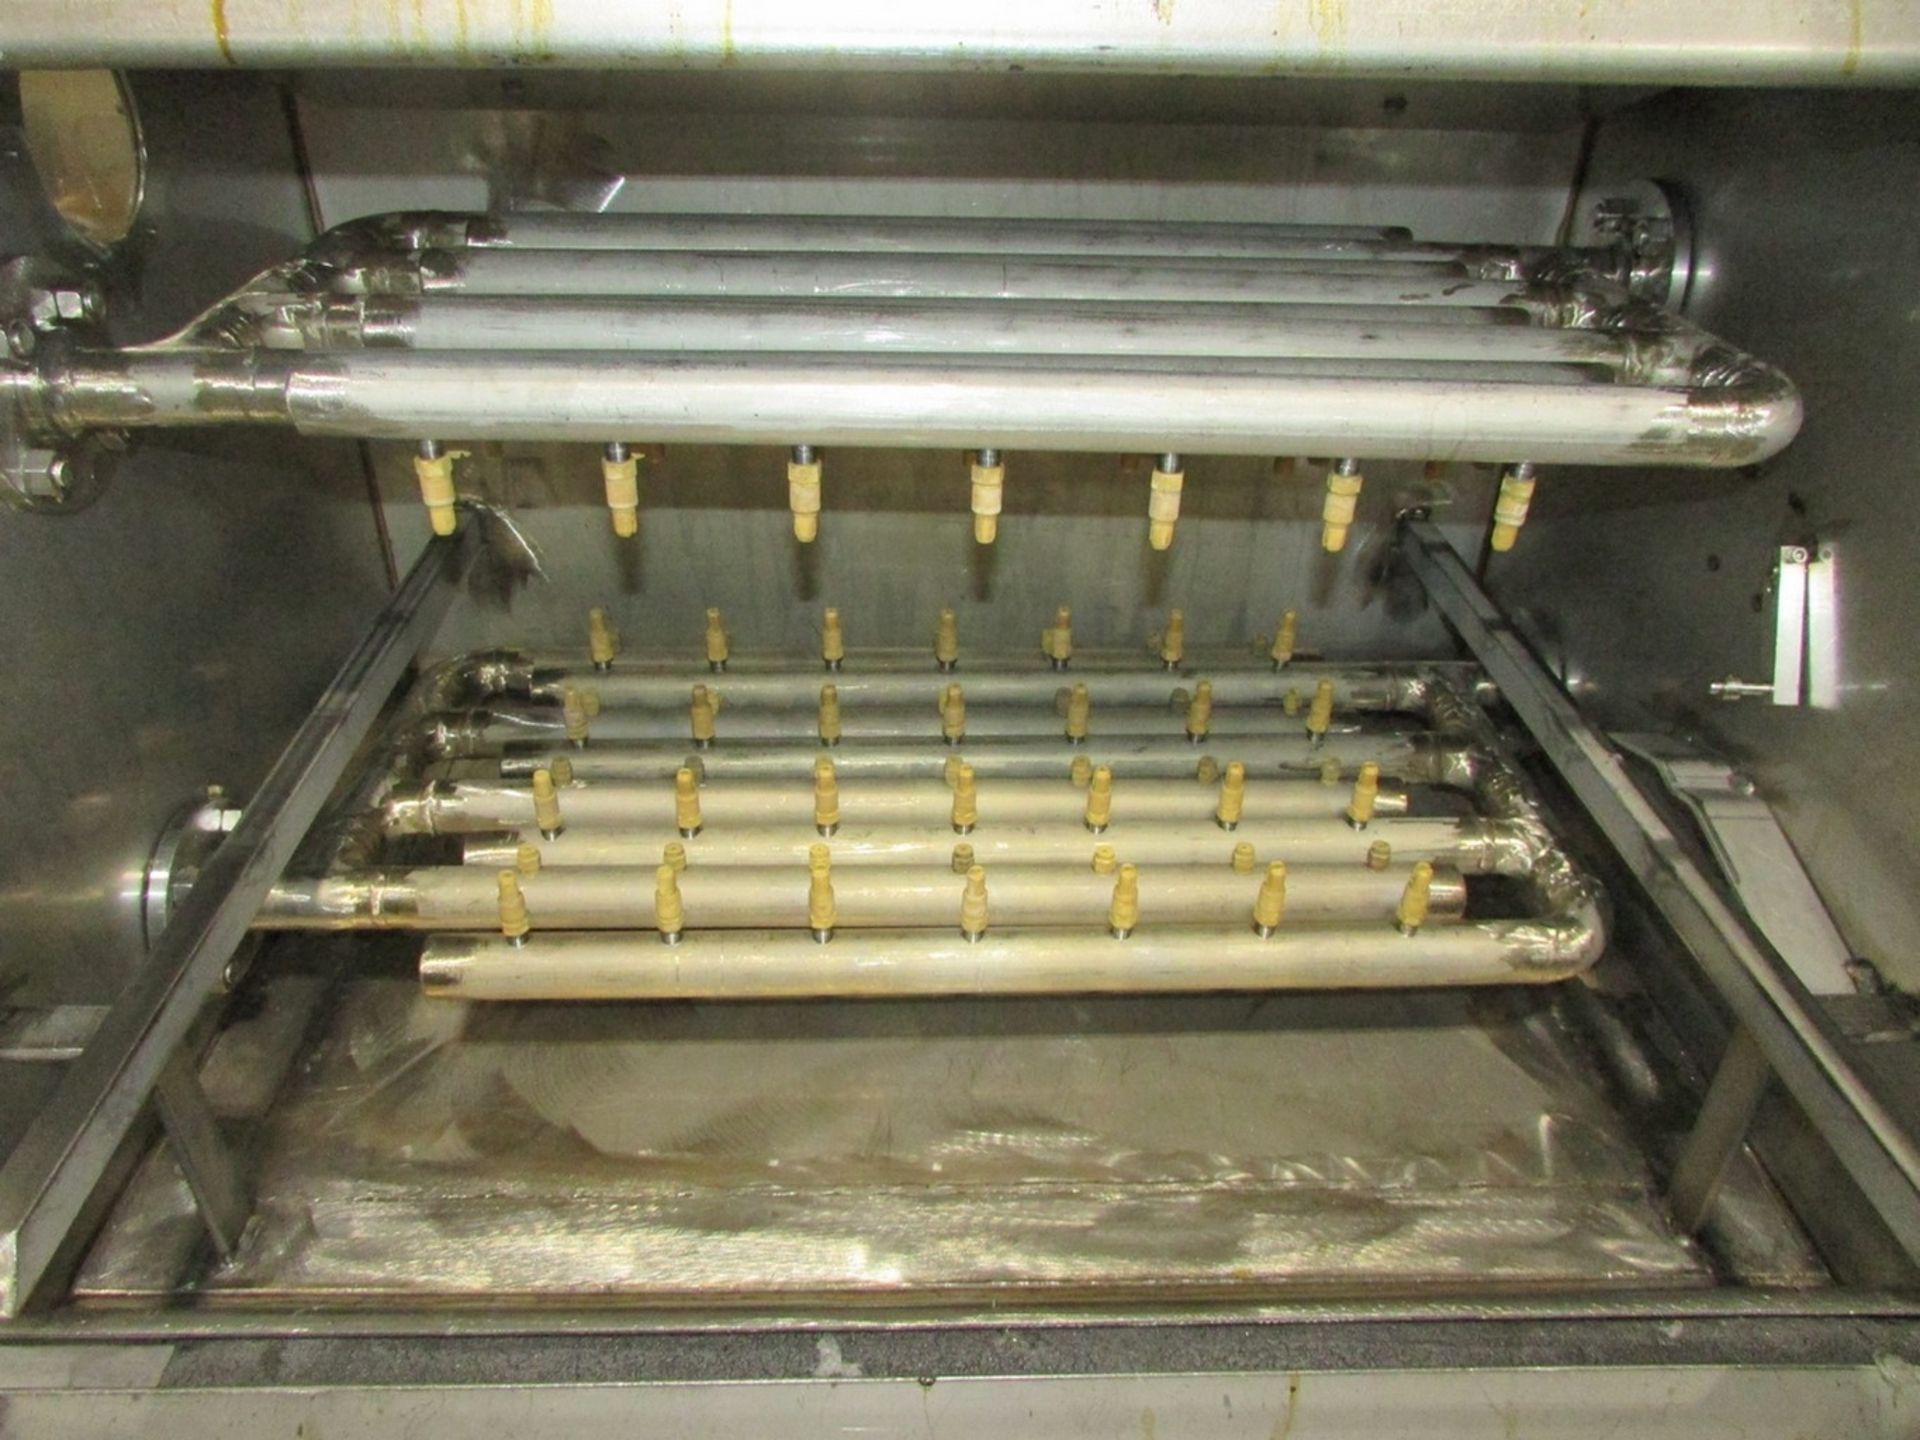 Automated Finishing Model 3905 Parts Washer - Image 3 of 15